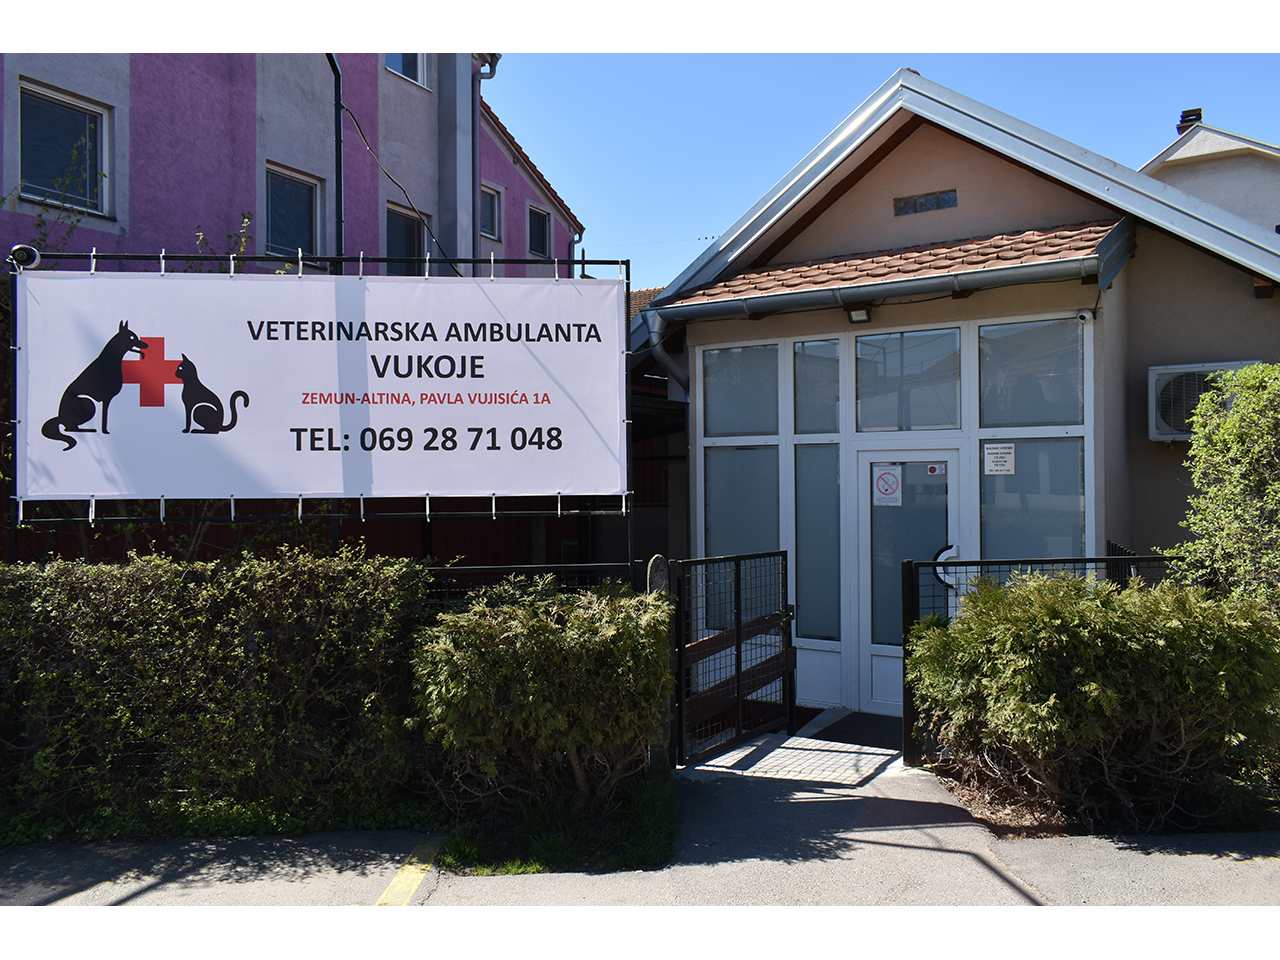 Slika 1 - VETERINARSKA AMBULANTA VUKOJE Veterinarske ordinacije, veterinari Beograd